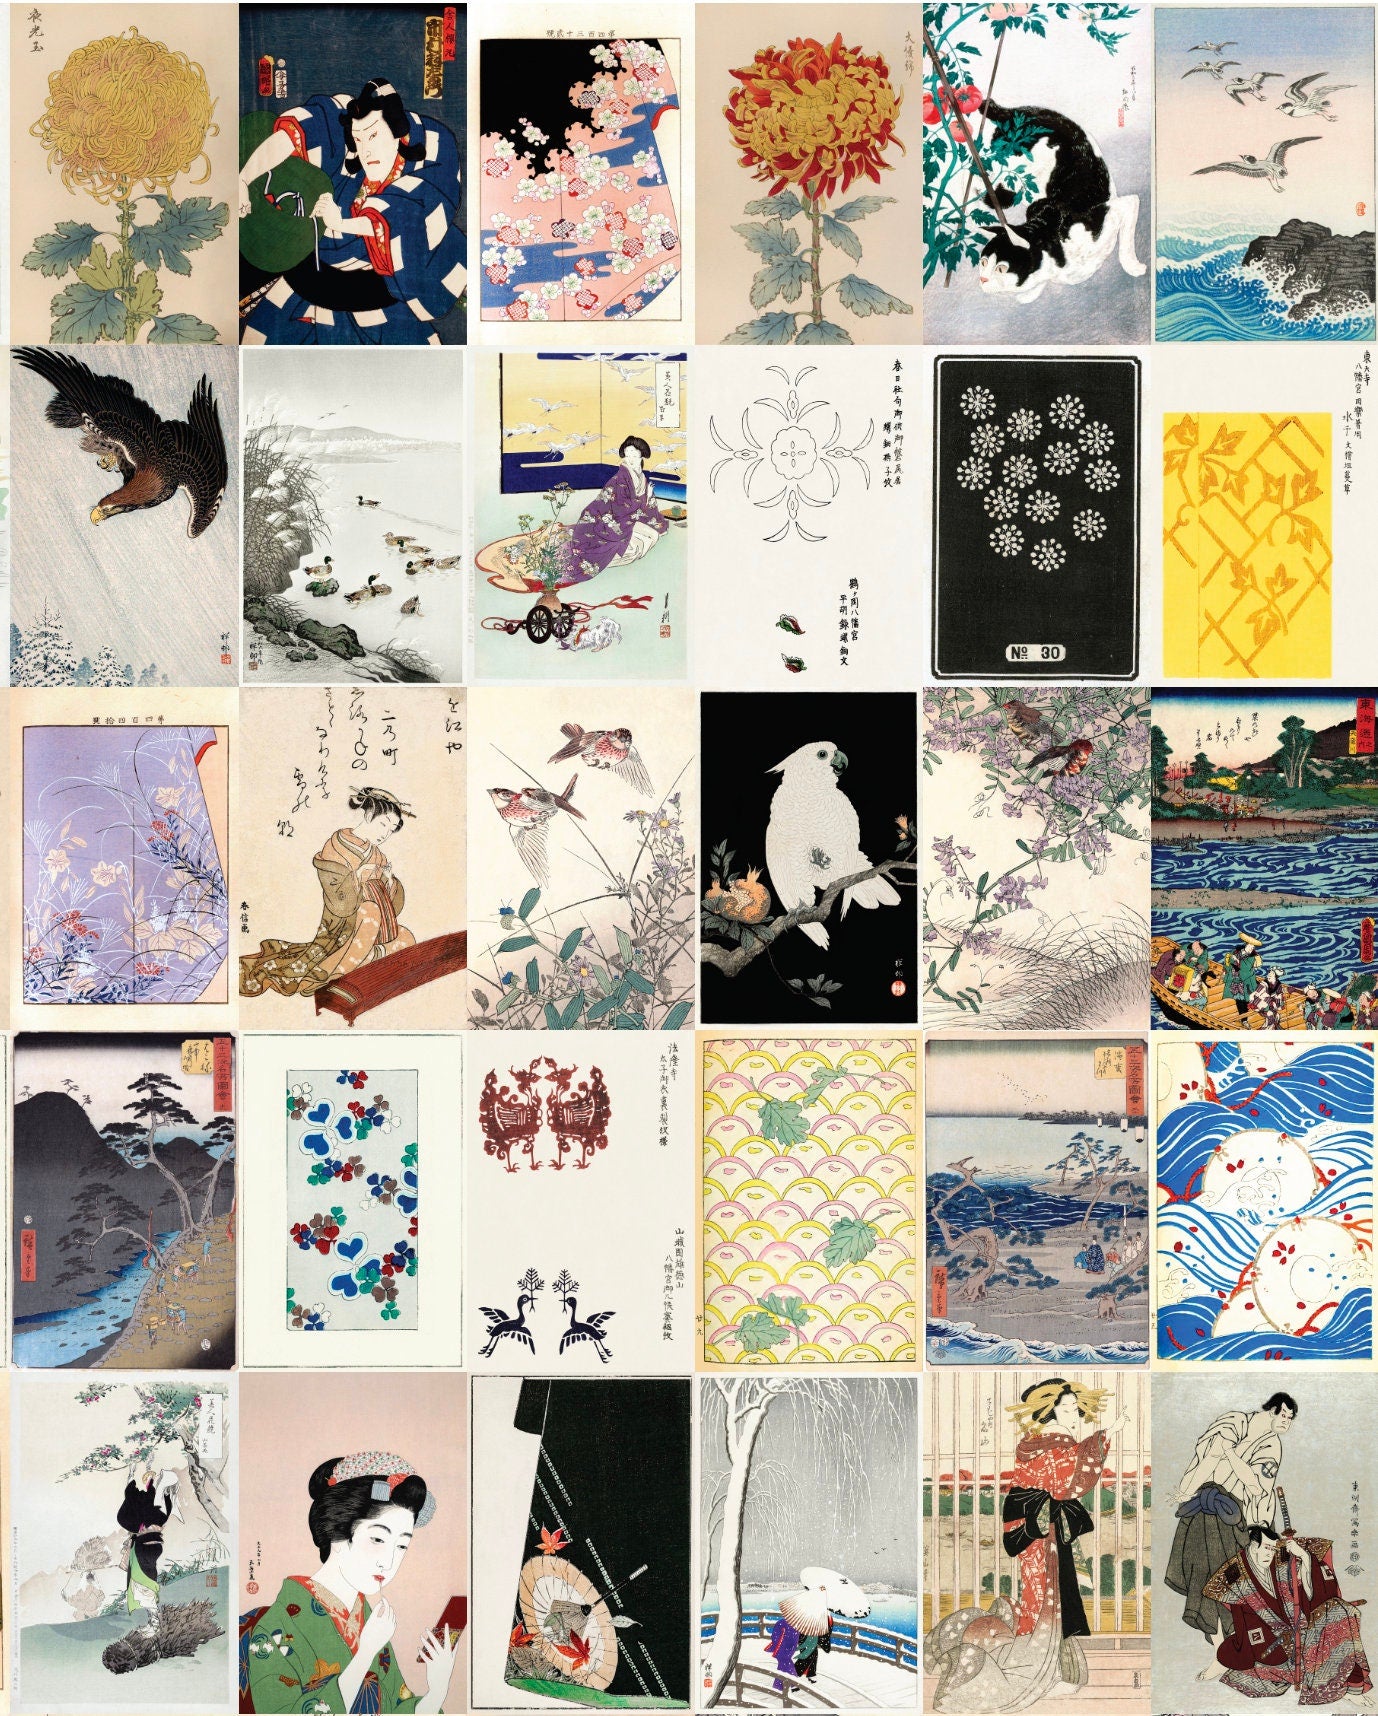 Japanese Ukiyo-e Woodblock Print 4"x6" Collage Kit Set 4 [110 Images]